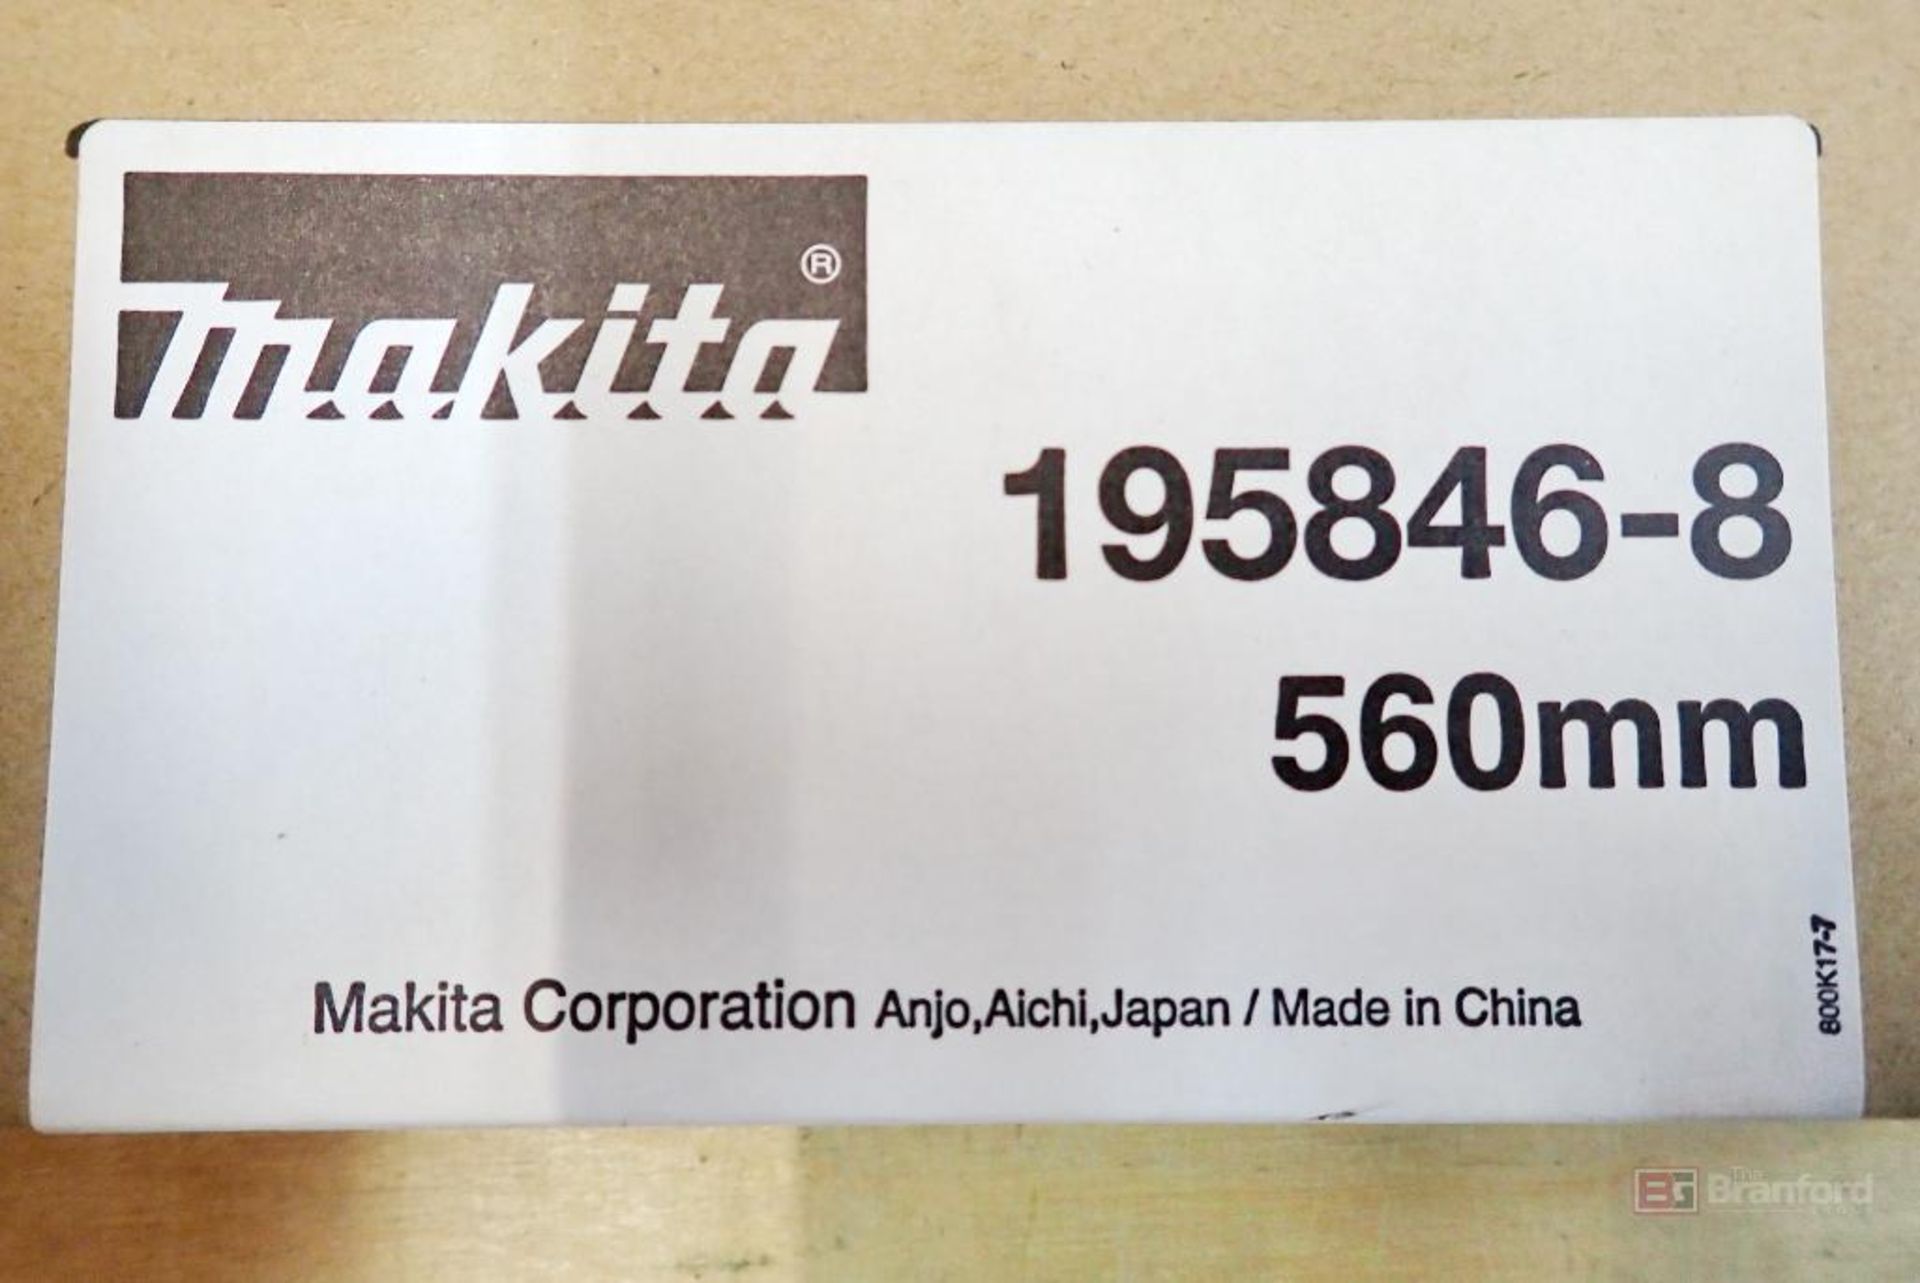 (4) Makita 195846-8 Shear Blades, 560mm - Image 2 of 5